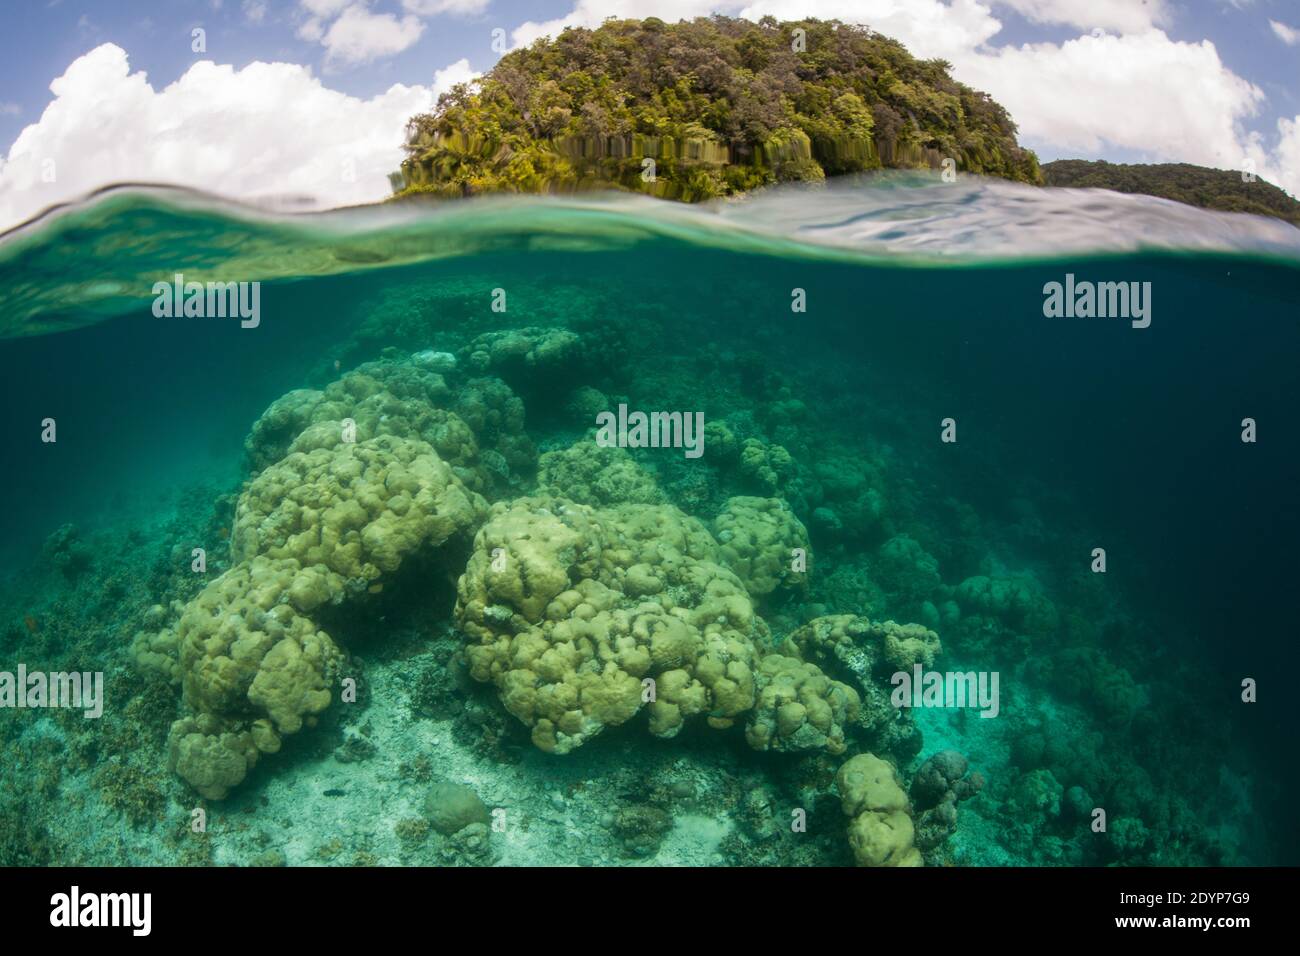 Les coraux s'épanouissent au milieu des îles calcaires des Palaos.ce pittoresque ensemble d'îles tropicales Micronésiennes soutient une étonnante diversité de biodiversité marine. Banque D'Images